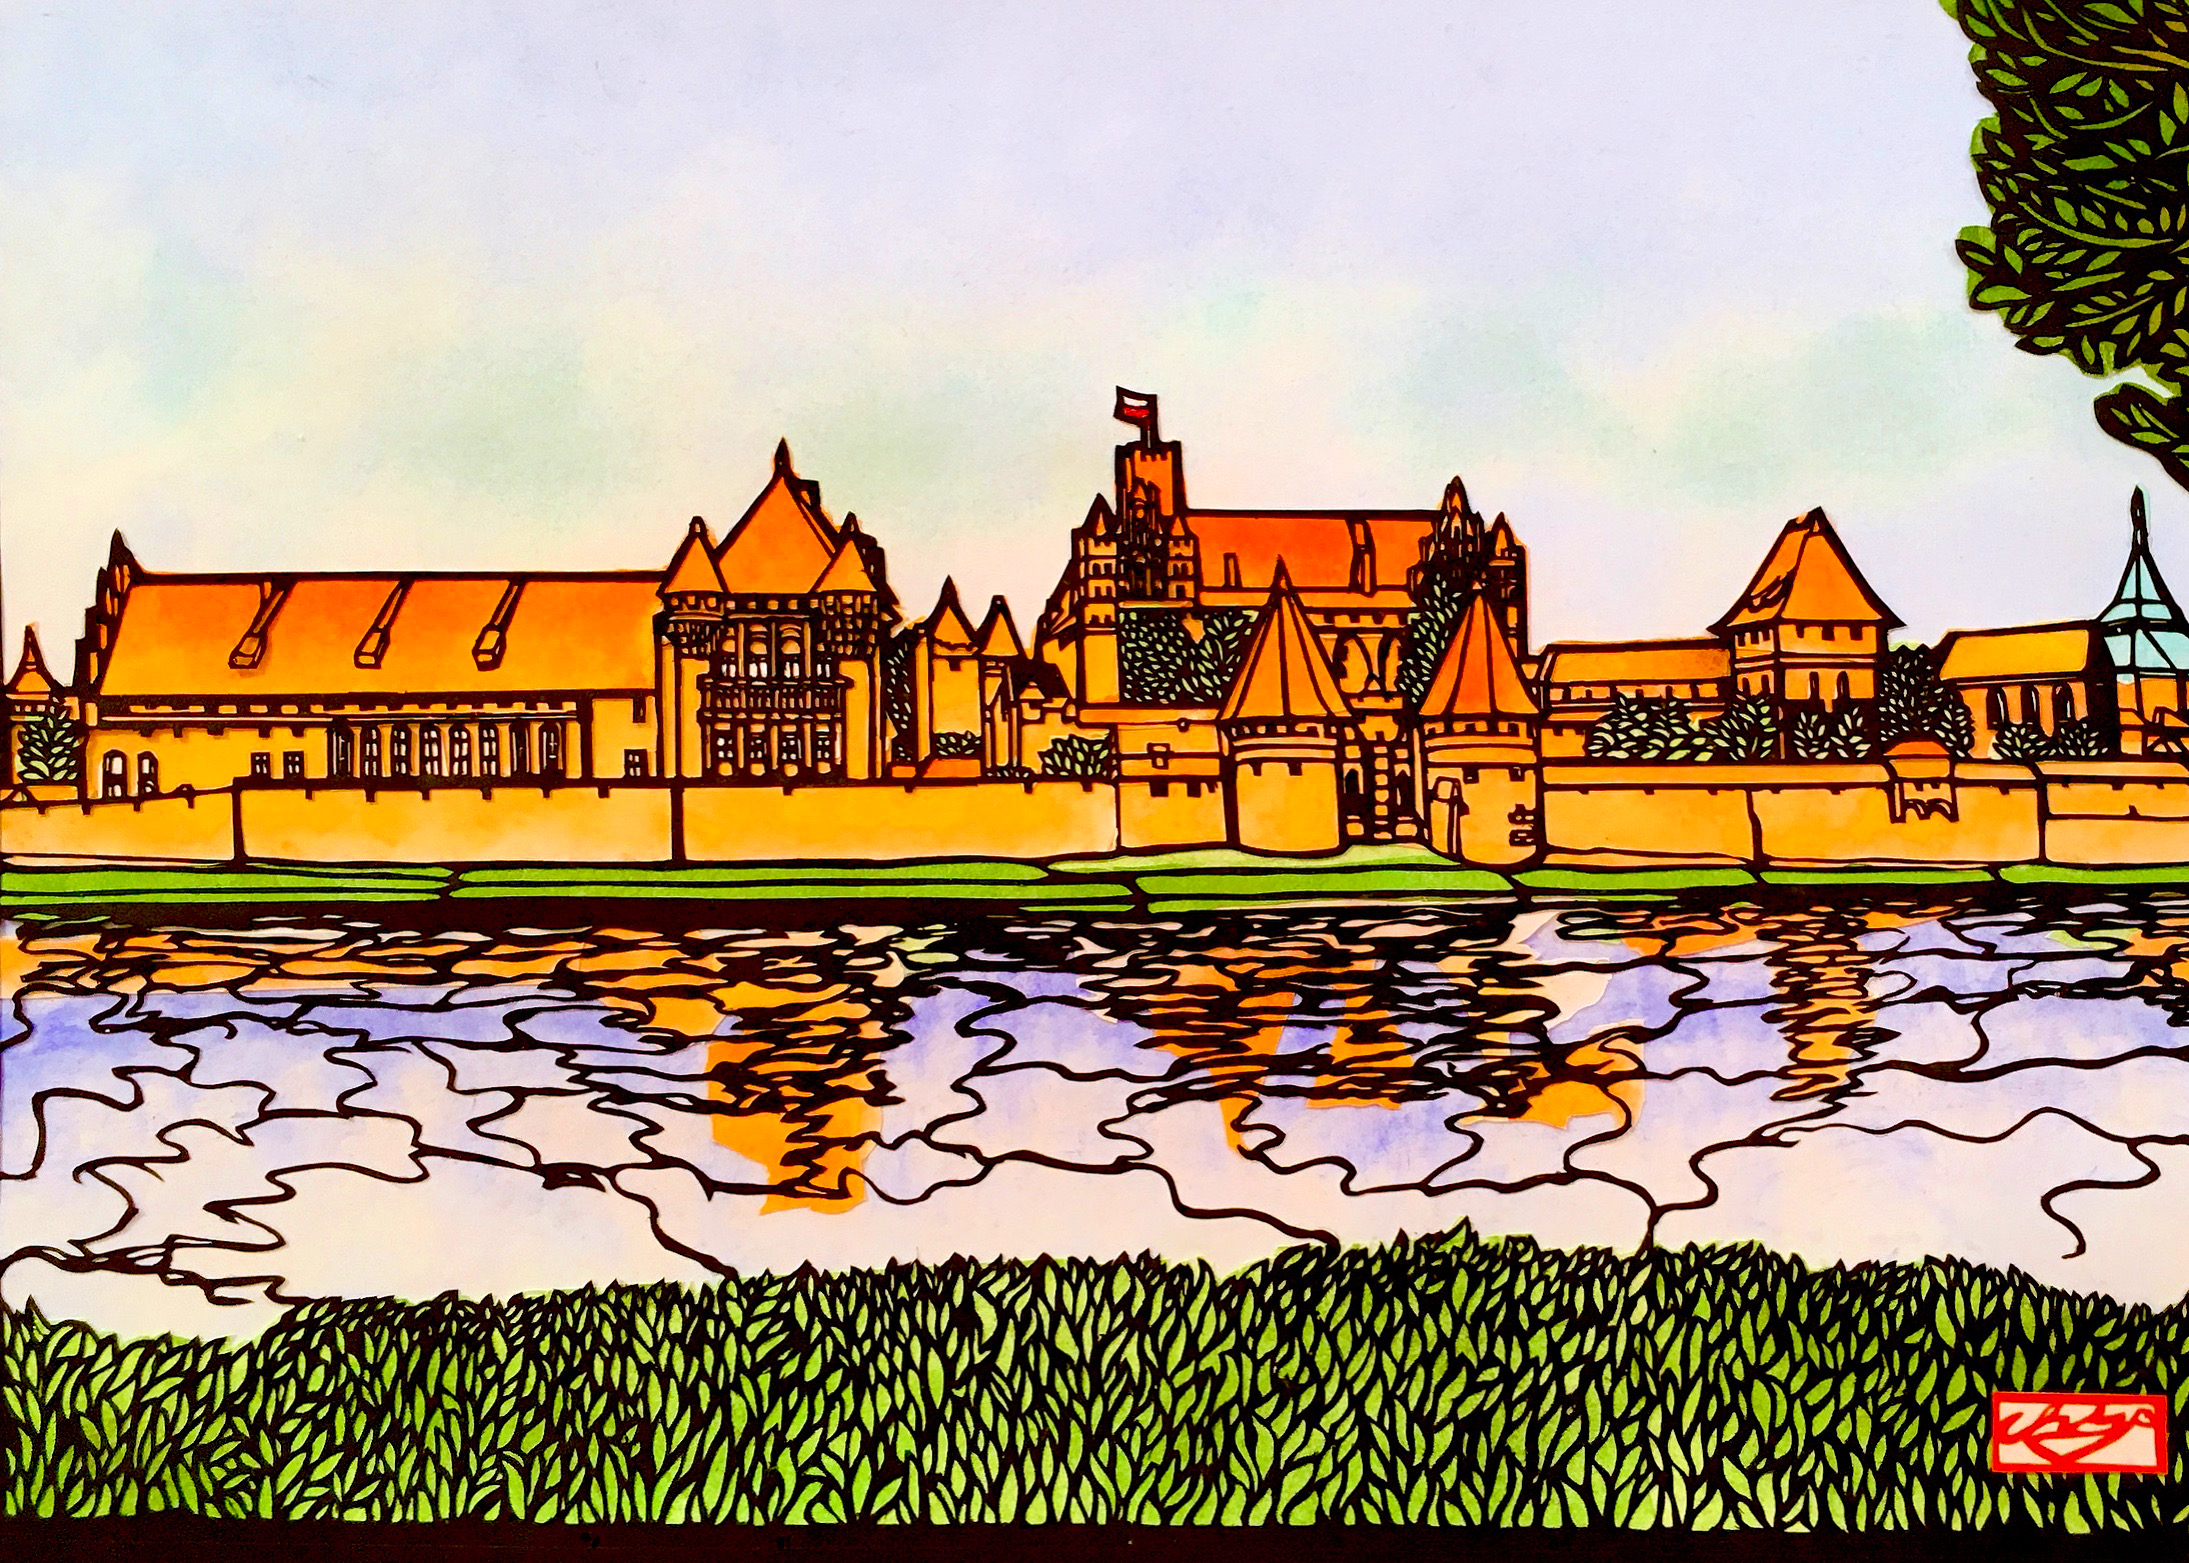 【切り絵】水面に映る美しい世界遺産マルボルク城。ポーランドの風景をお部屋に飾ってみませんか。